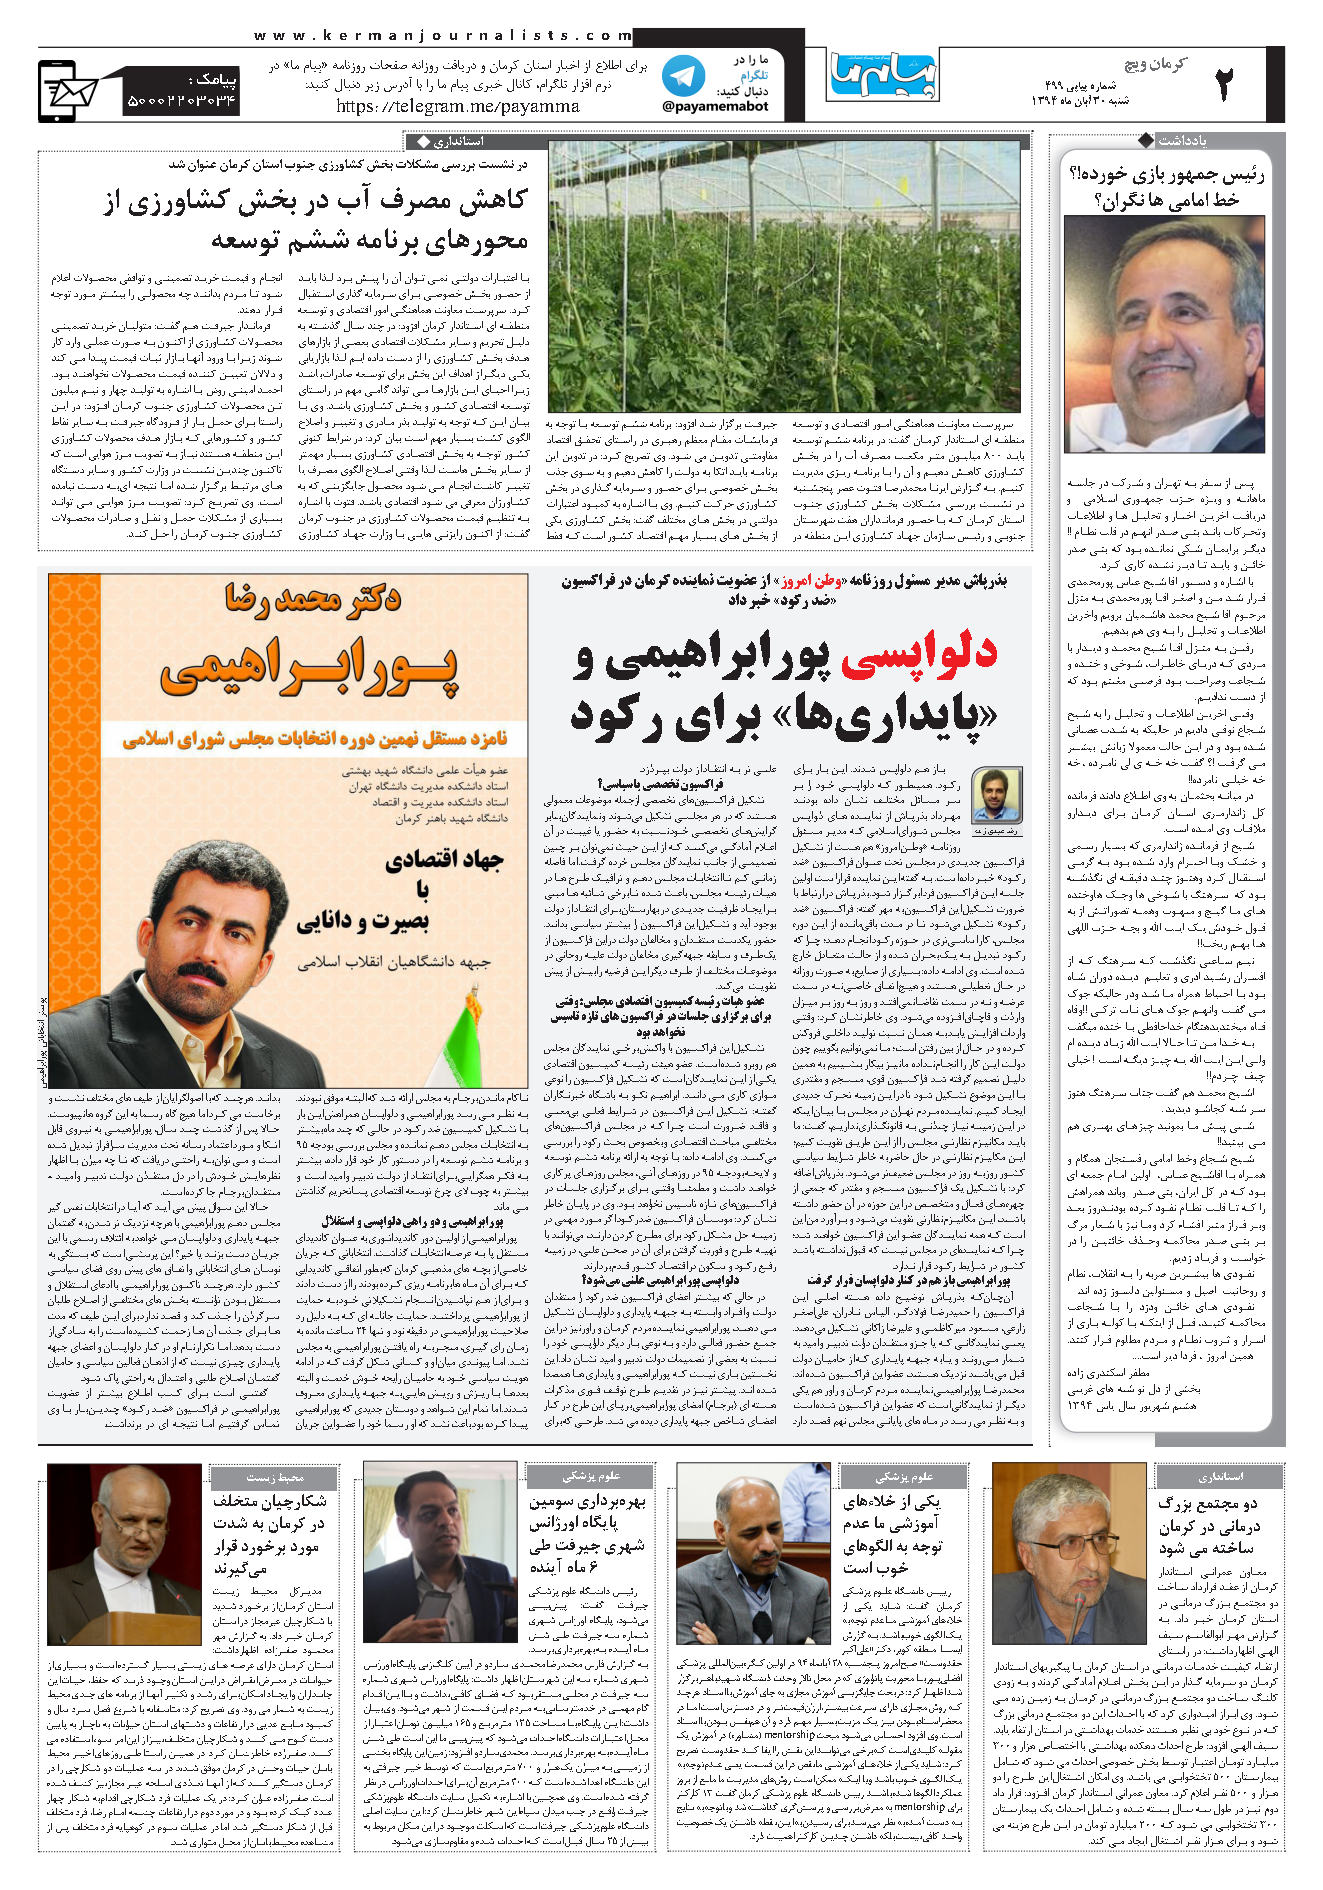 صفحه کرمان ویچ شماره صفحه اول۵۰۰ روزنامه پیام ما